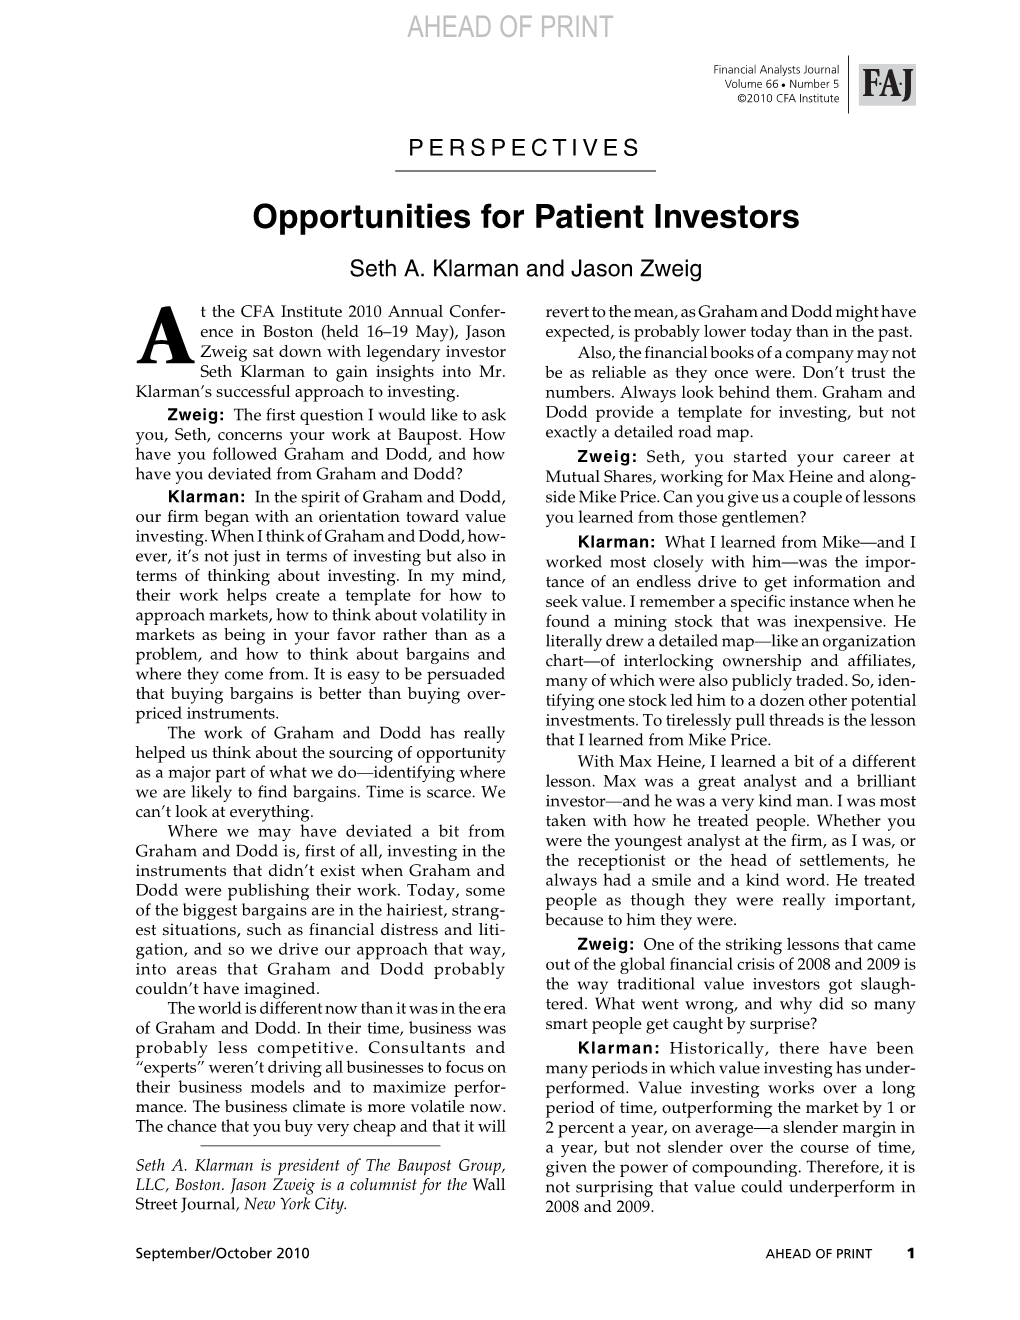 Opportunities for Patient Investors Door Seth Klarman